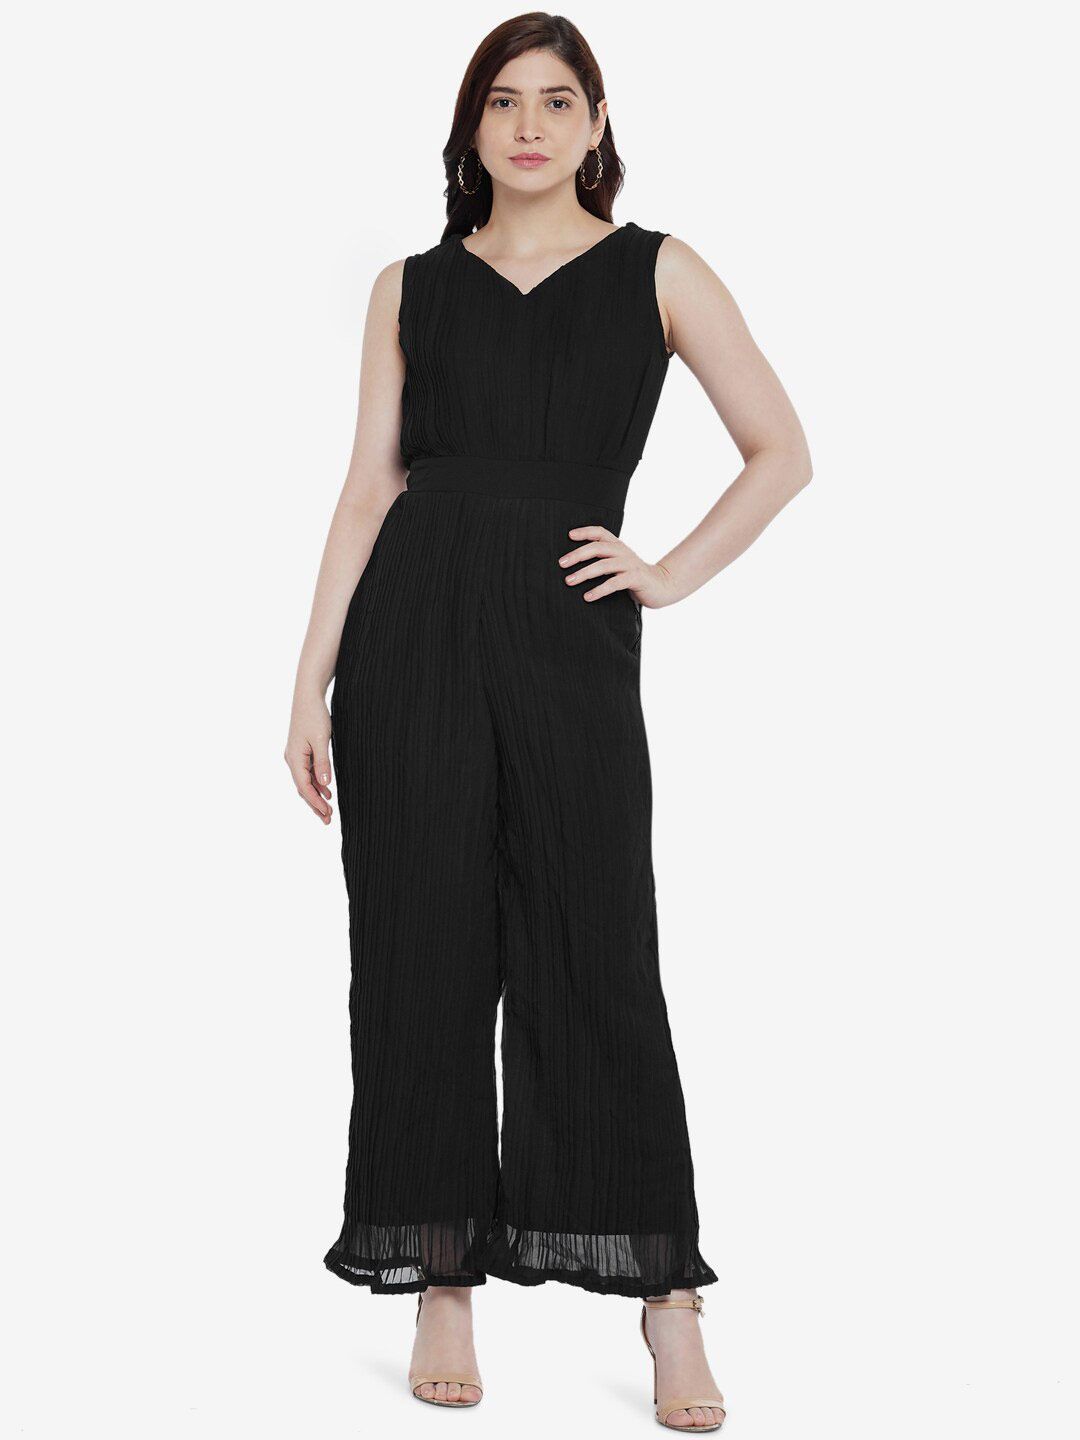 Emmyrobe Black Pleated Basic Jumpsuit Price in India